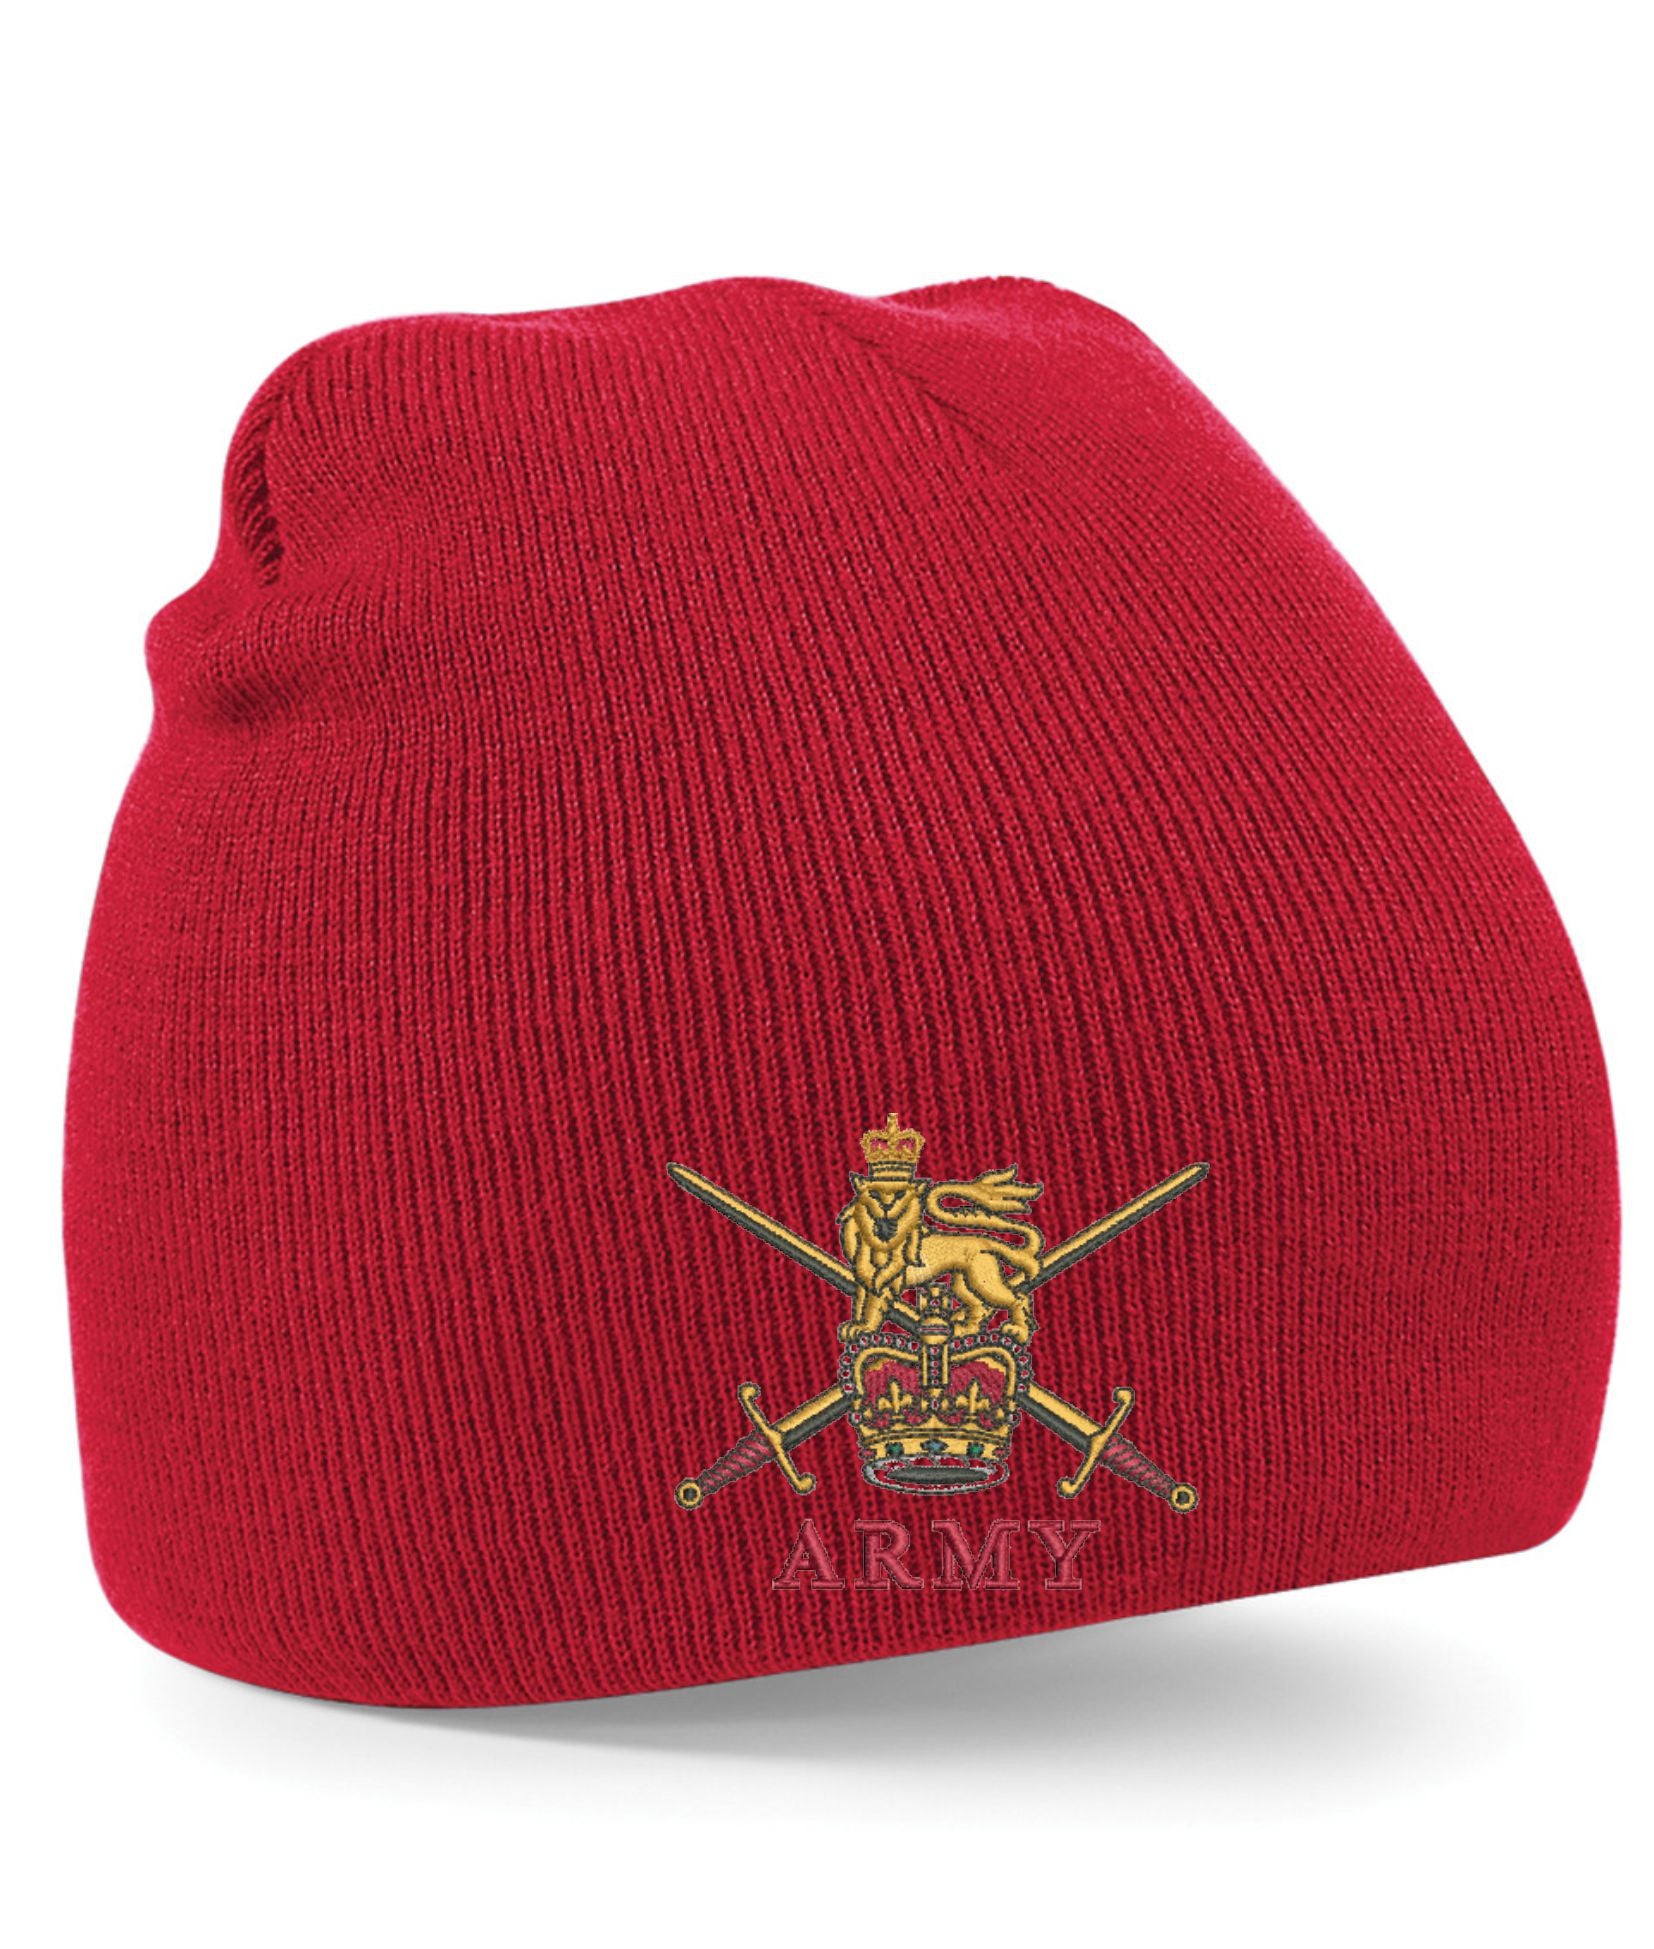 Army Beanie Hats